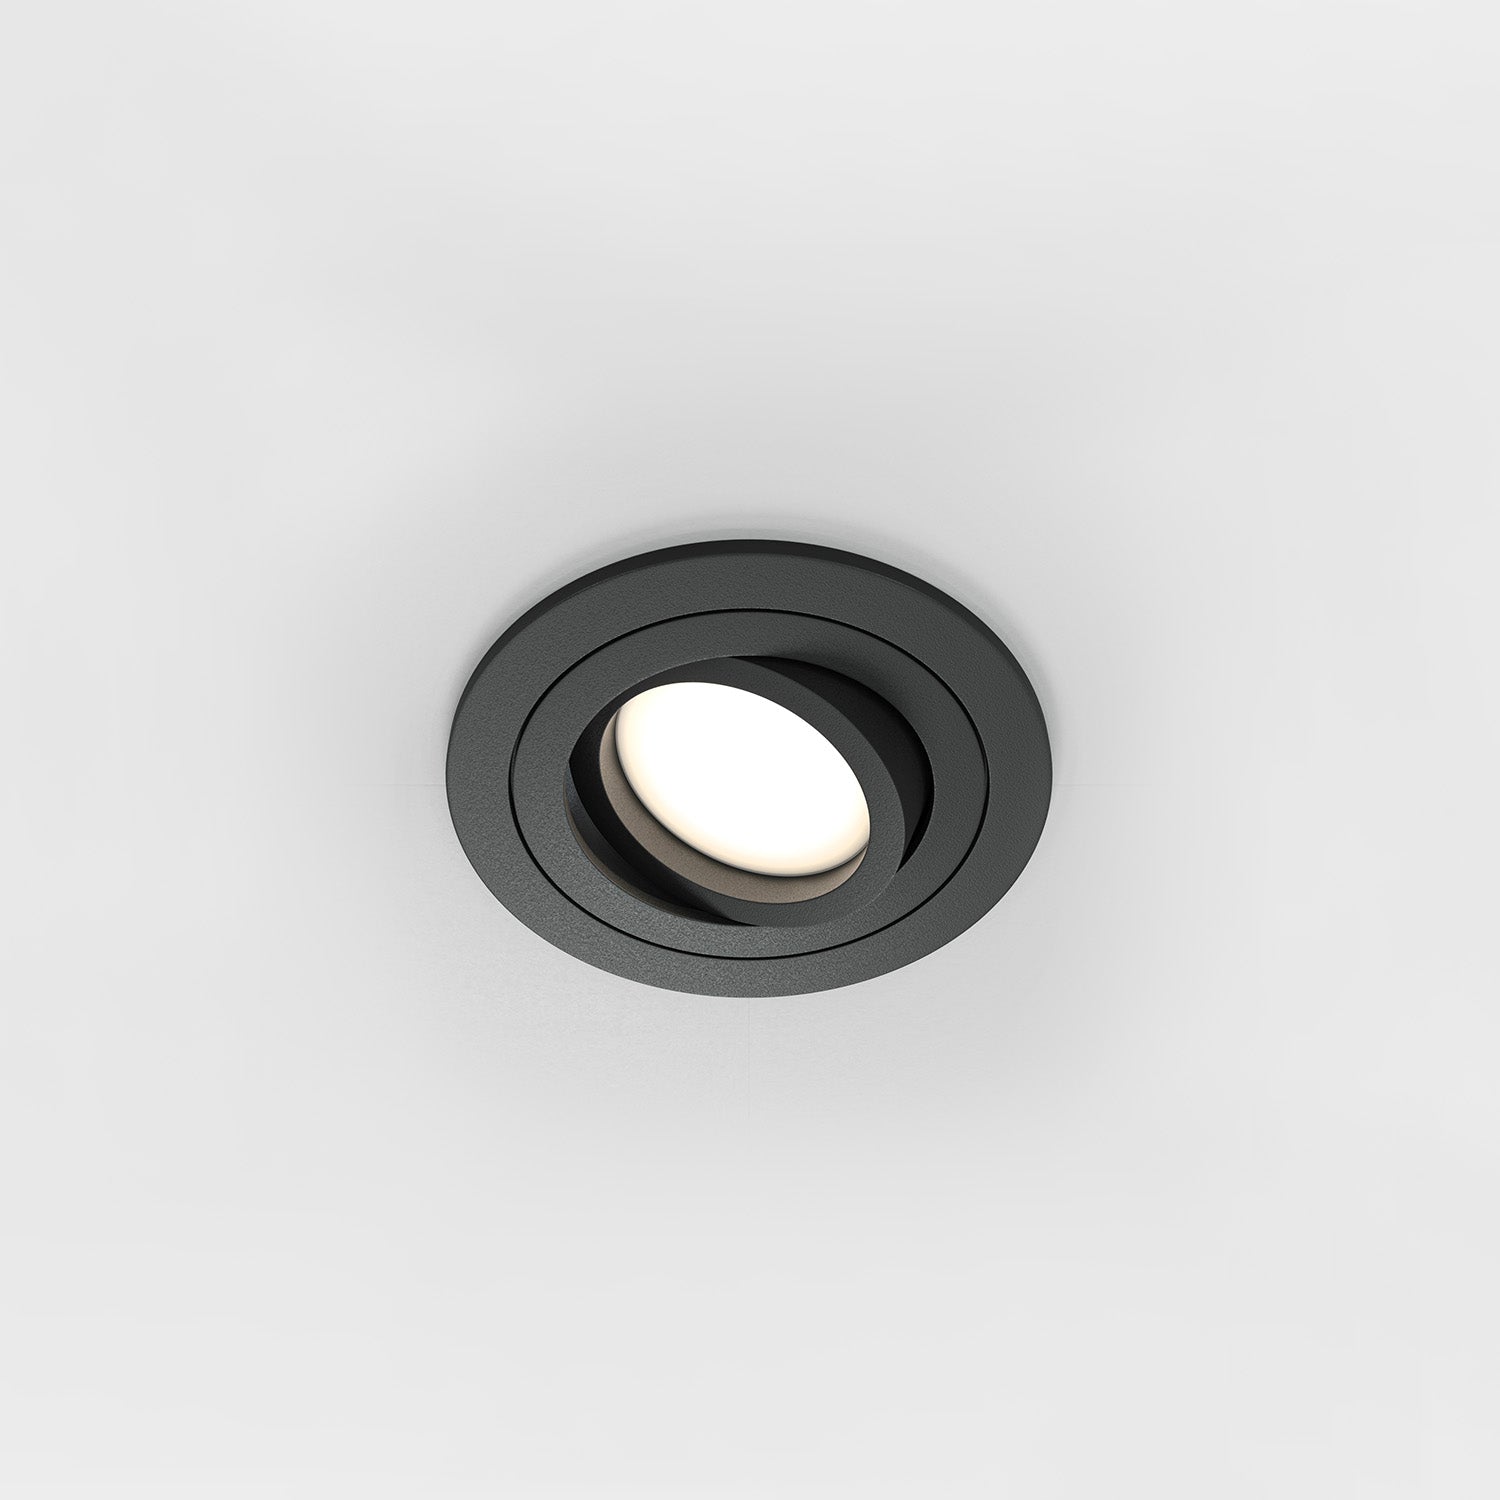 ATOM A – 92 mm runder, schwenkbarer Einbaustrahler in Schwarz oder Weiß